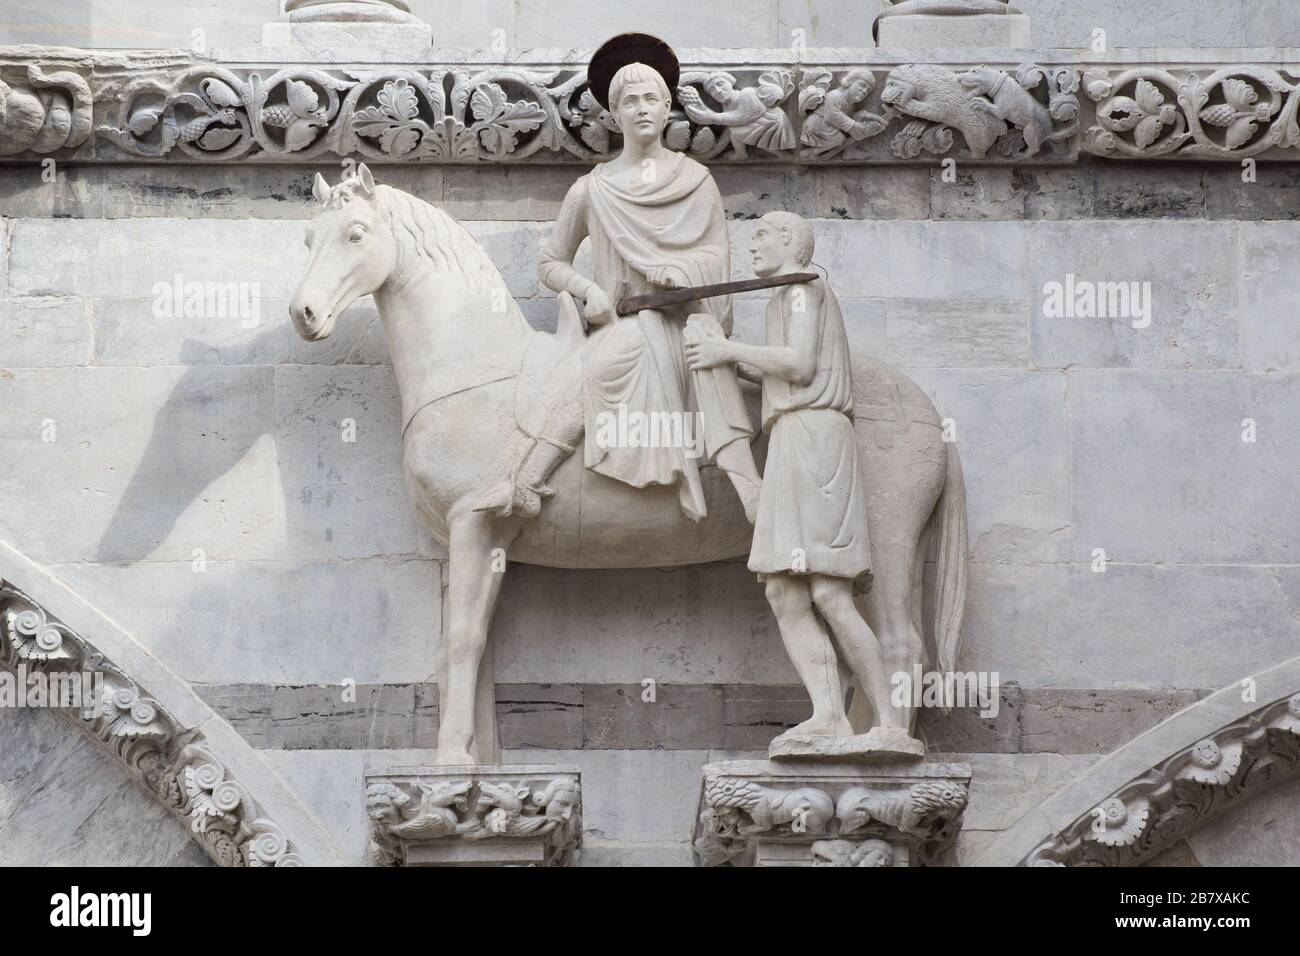 La estatua medieval de San Martín y el beggar en la fachada de la Catedral de Lucca, Toscana, Italia Foto de stock